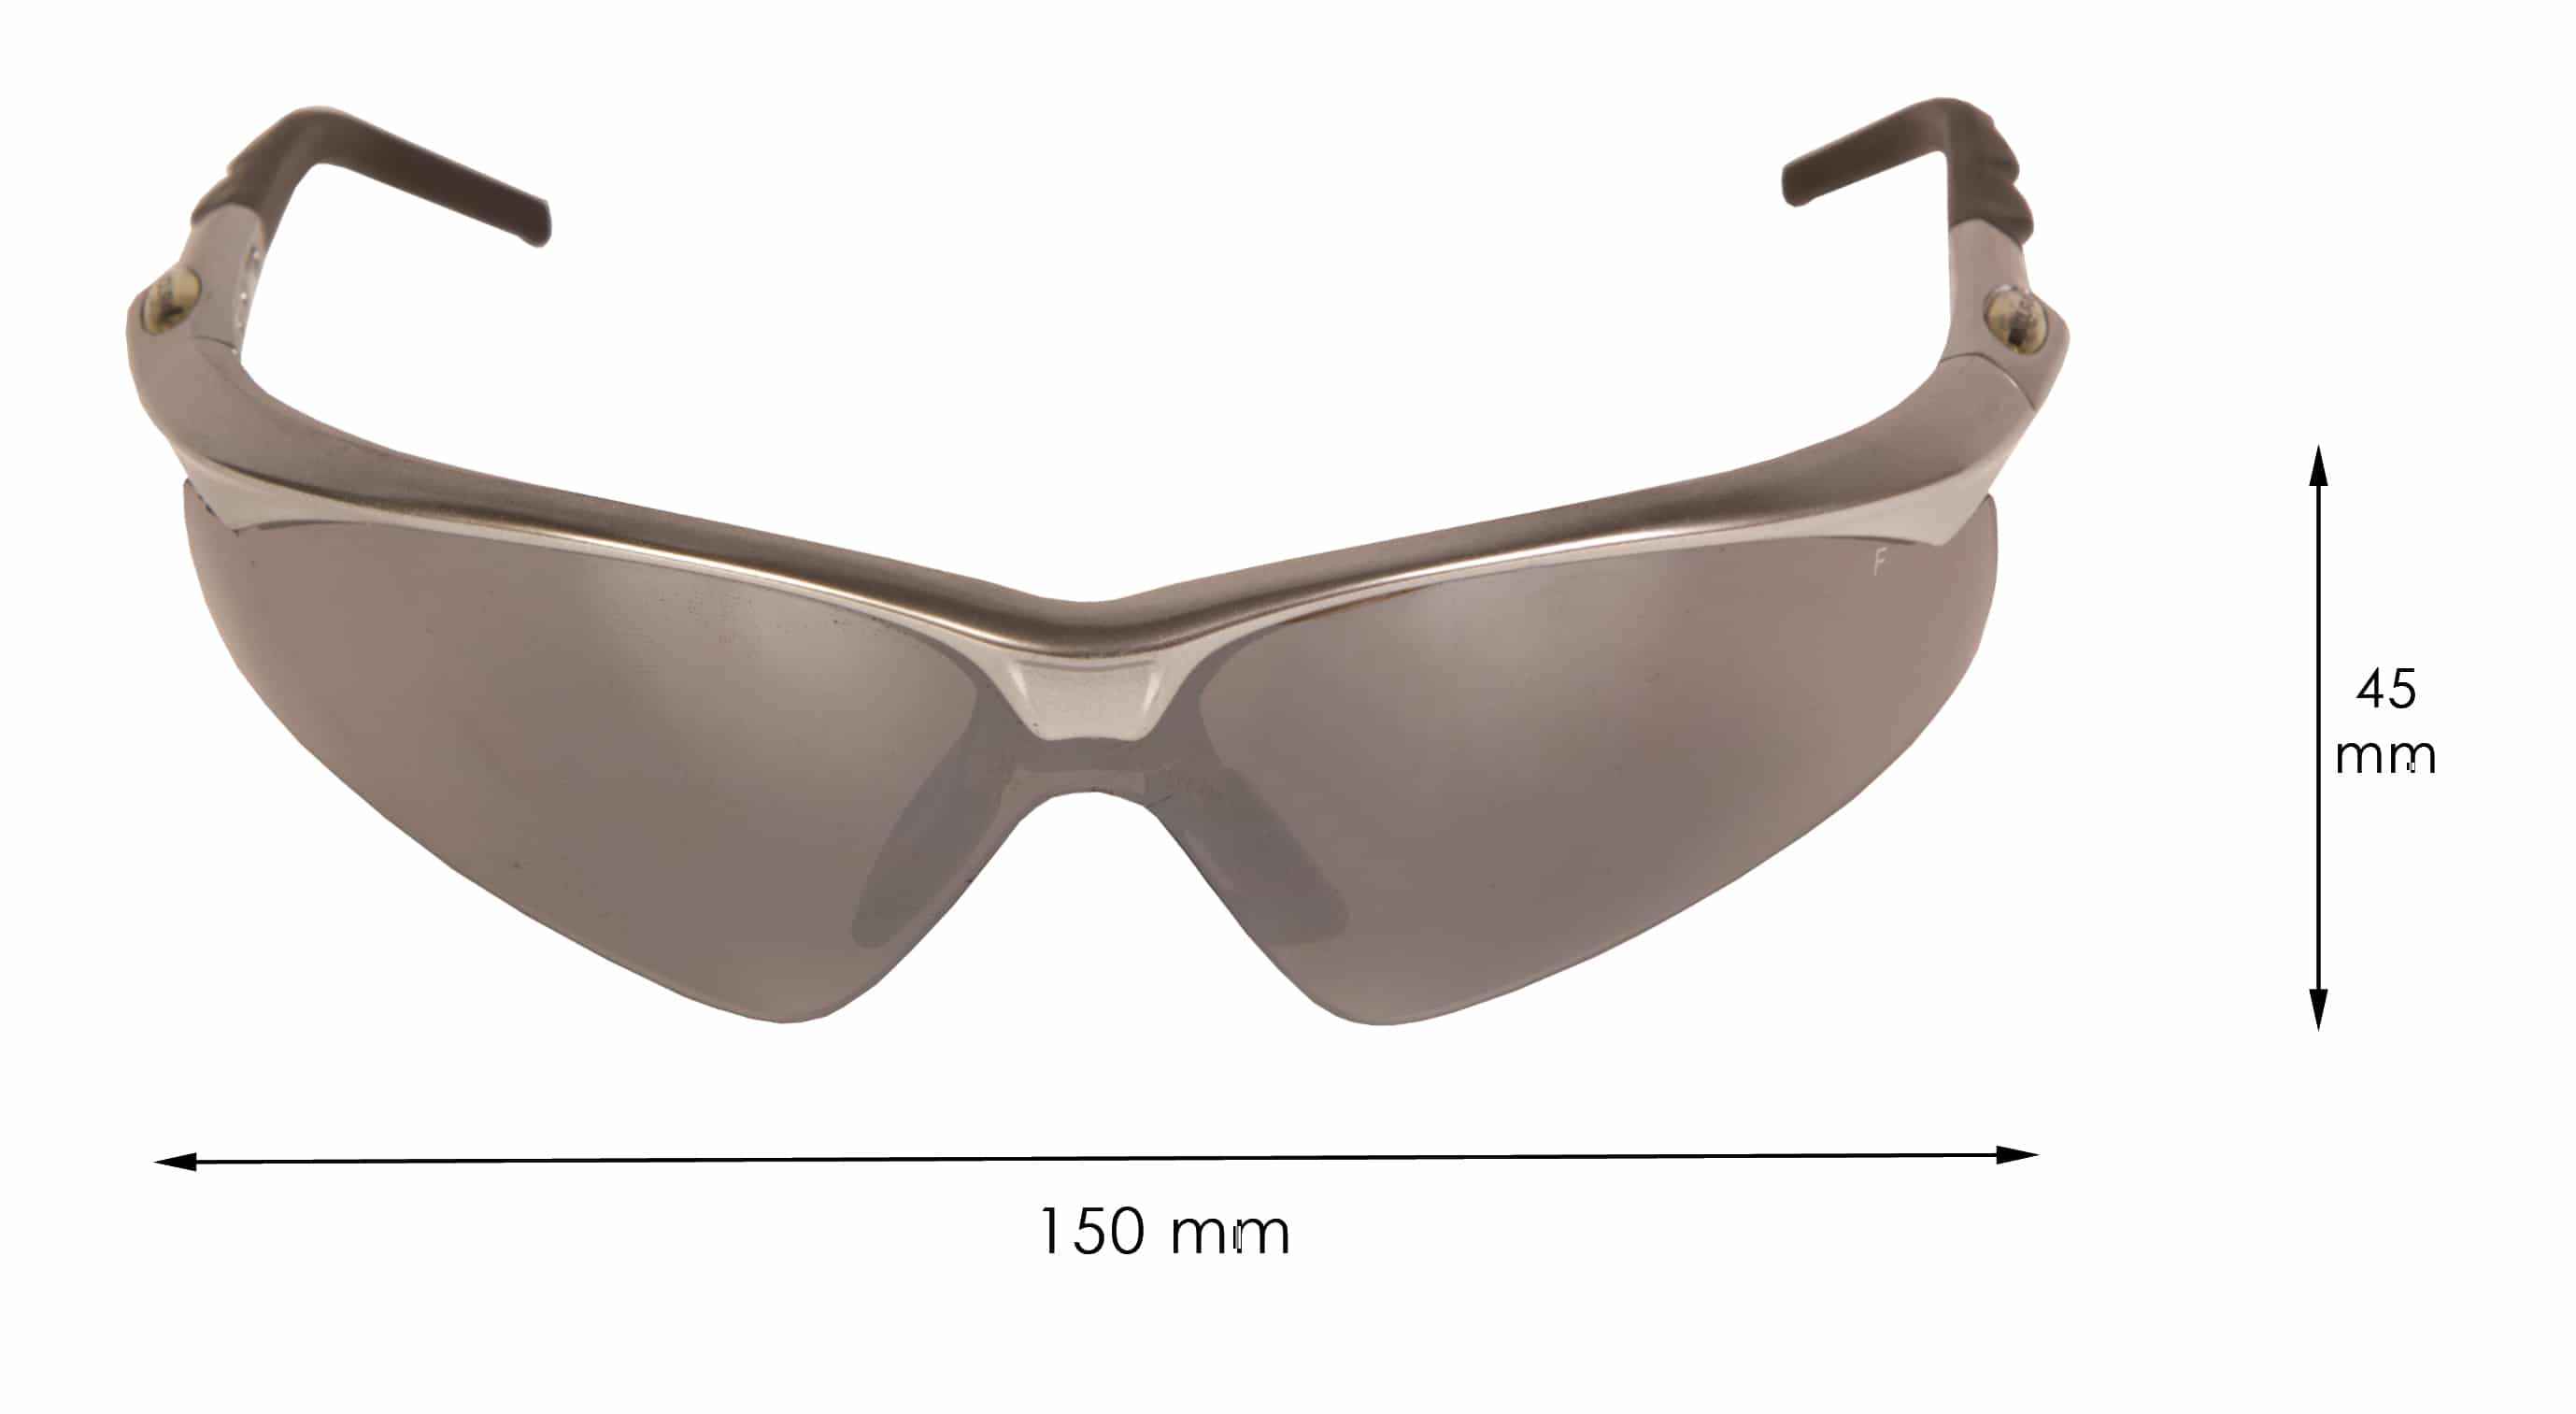 Okulary Endura Shark wymiary